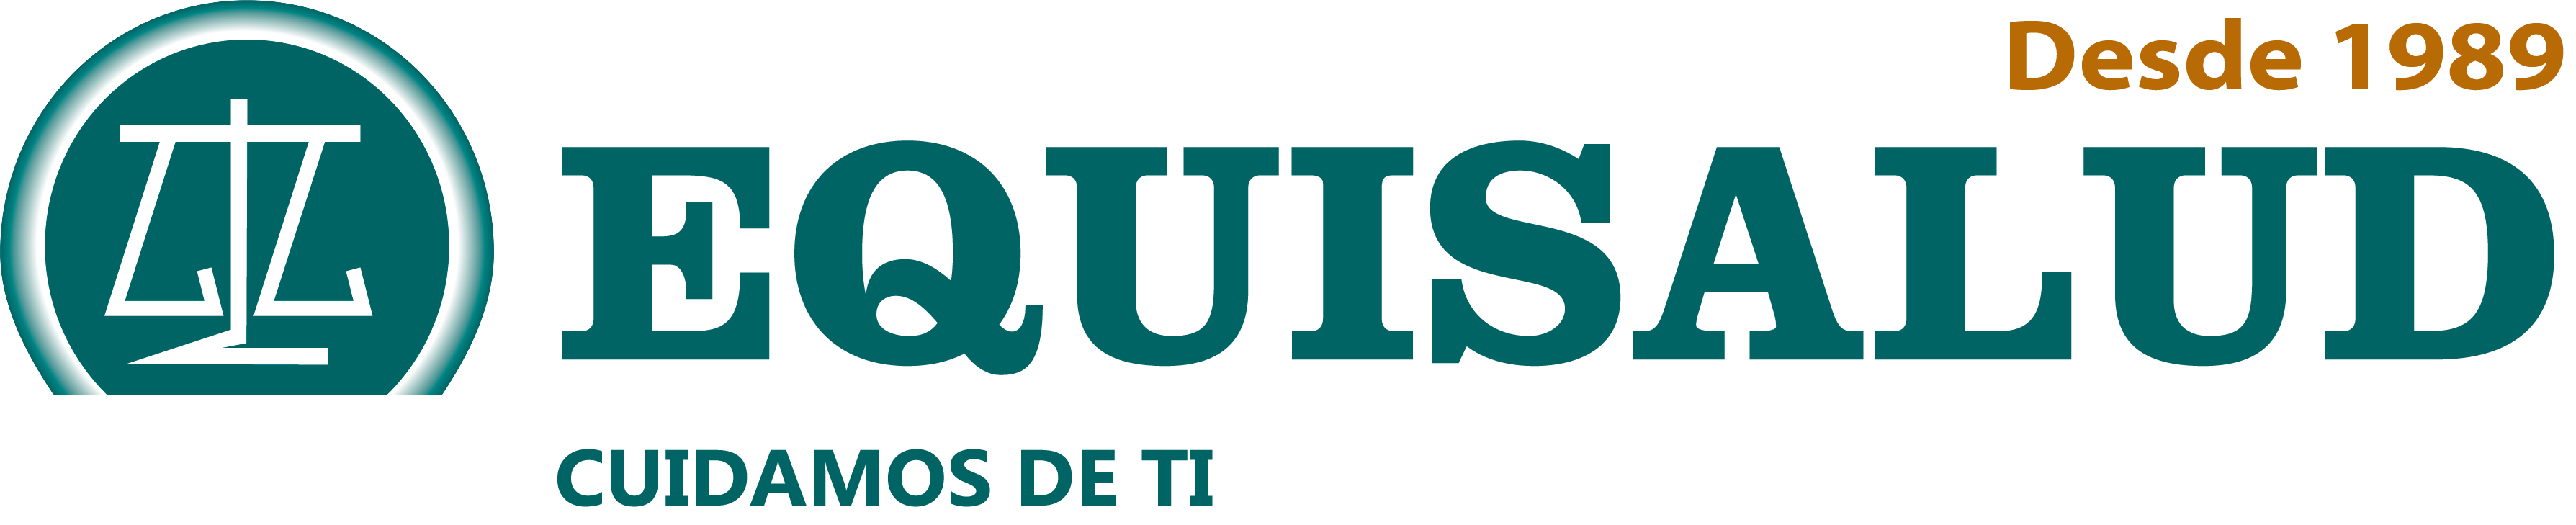 Logo del laboratorio Equisalud